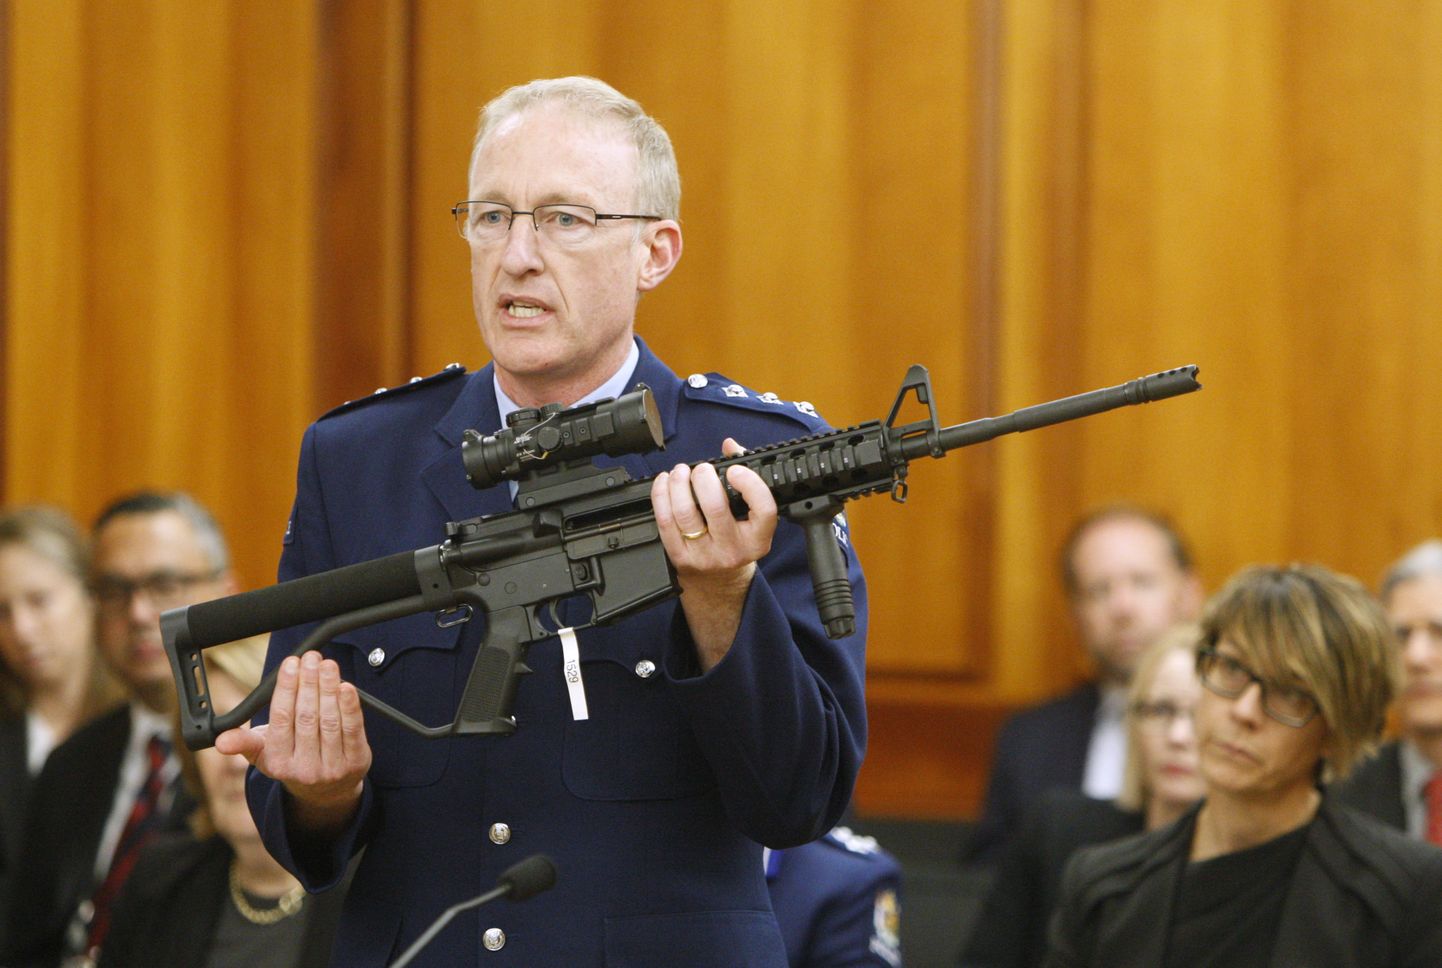 Uus-Meremaa politseiülema kohusetäitja Mike McIlraith näitab seadusandjatele relva, mille sarnast kasutas Brenton Tarrant 15. märtsil 51 inimese elu nõudnud mošeetulistamistes.